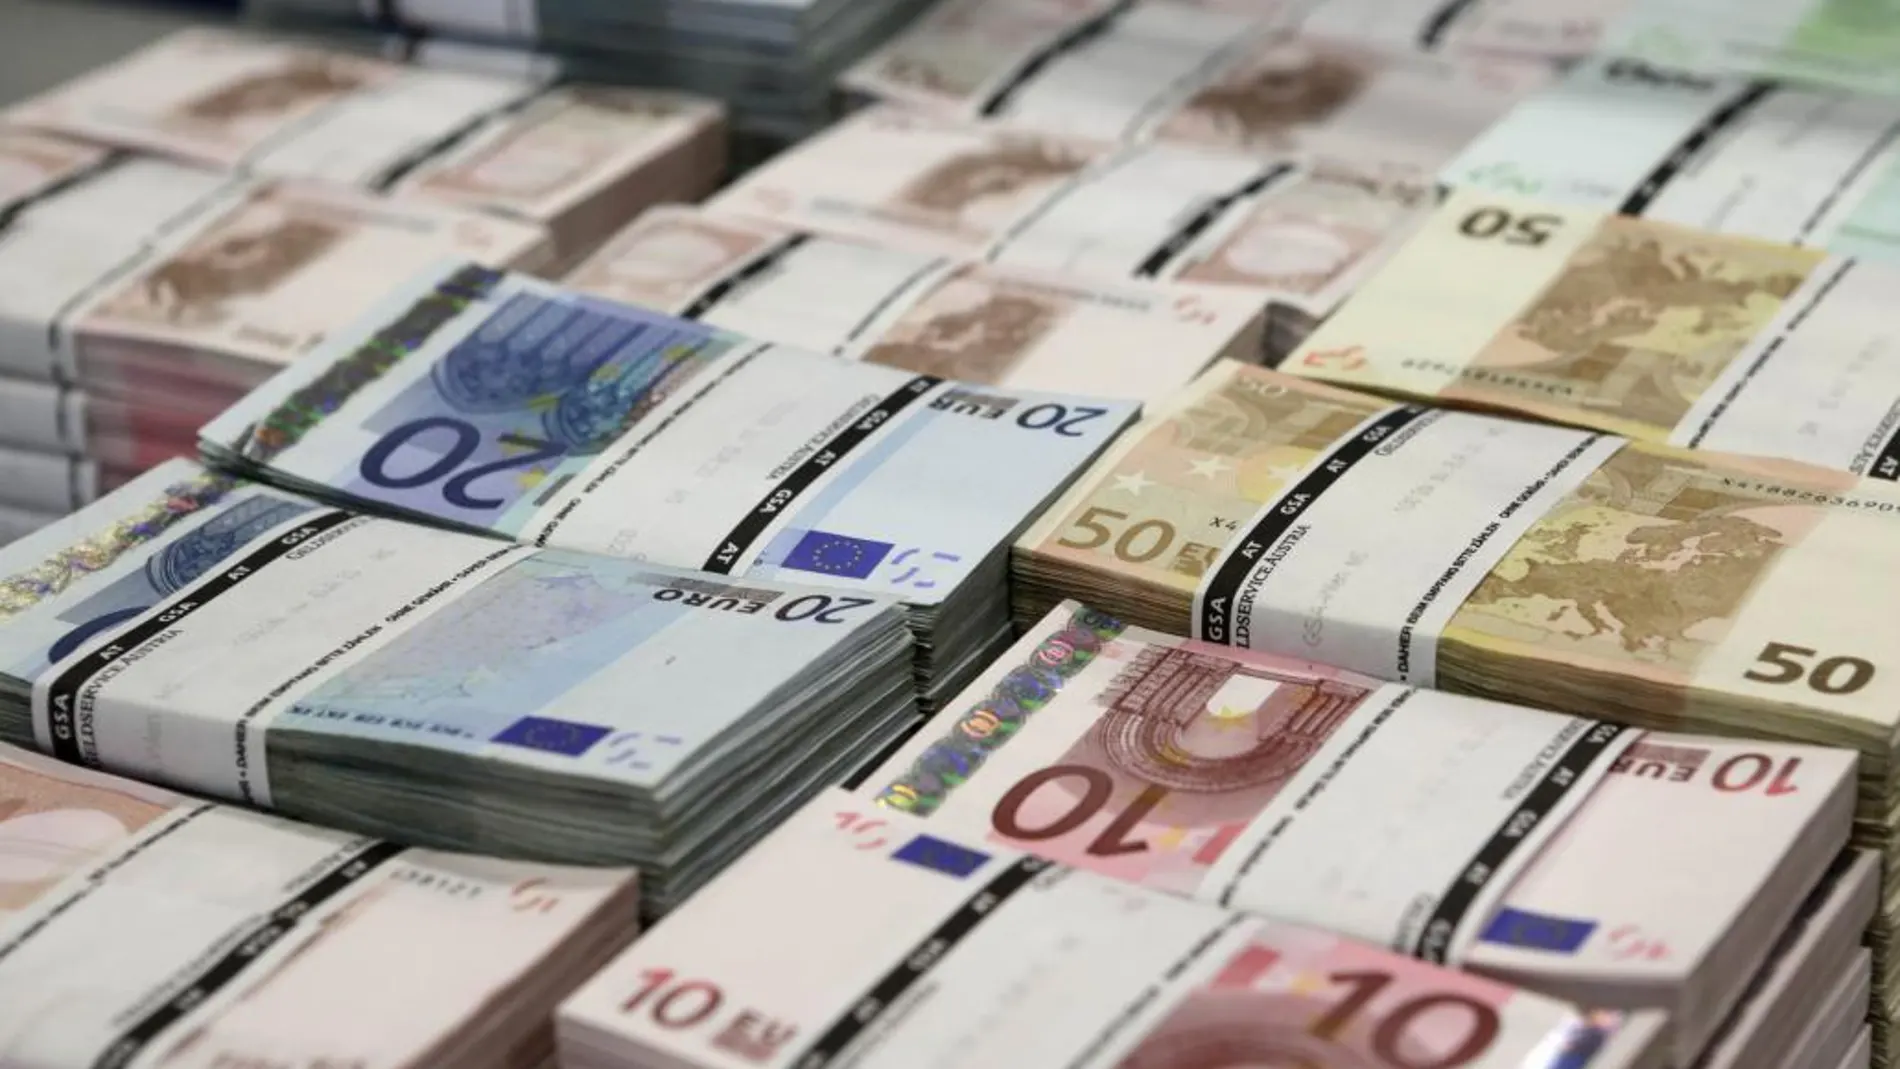 Desmantelado el mayor laboratorio de falsificación de moneda en España